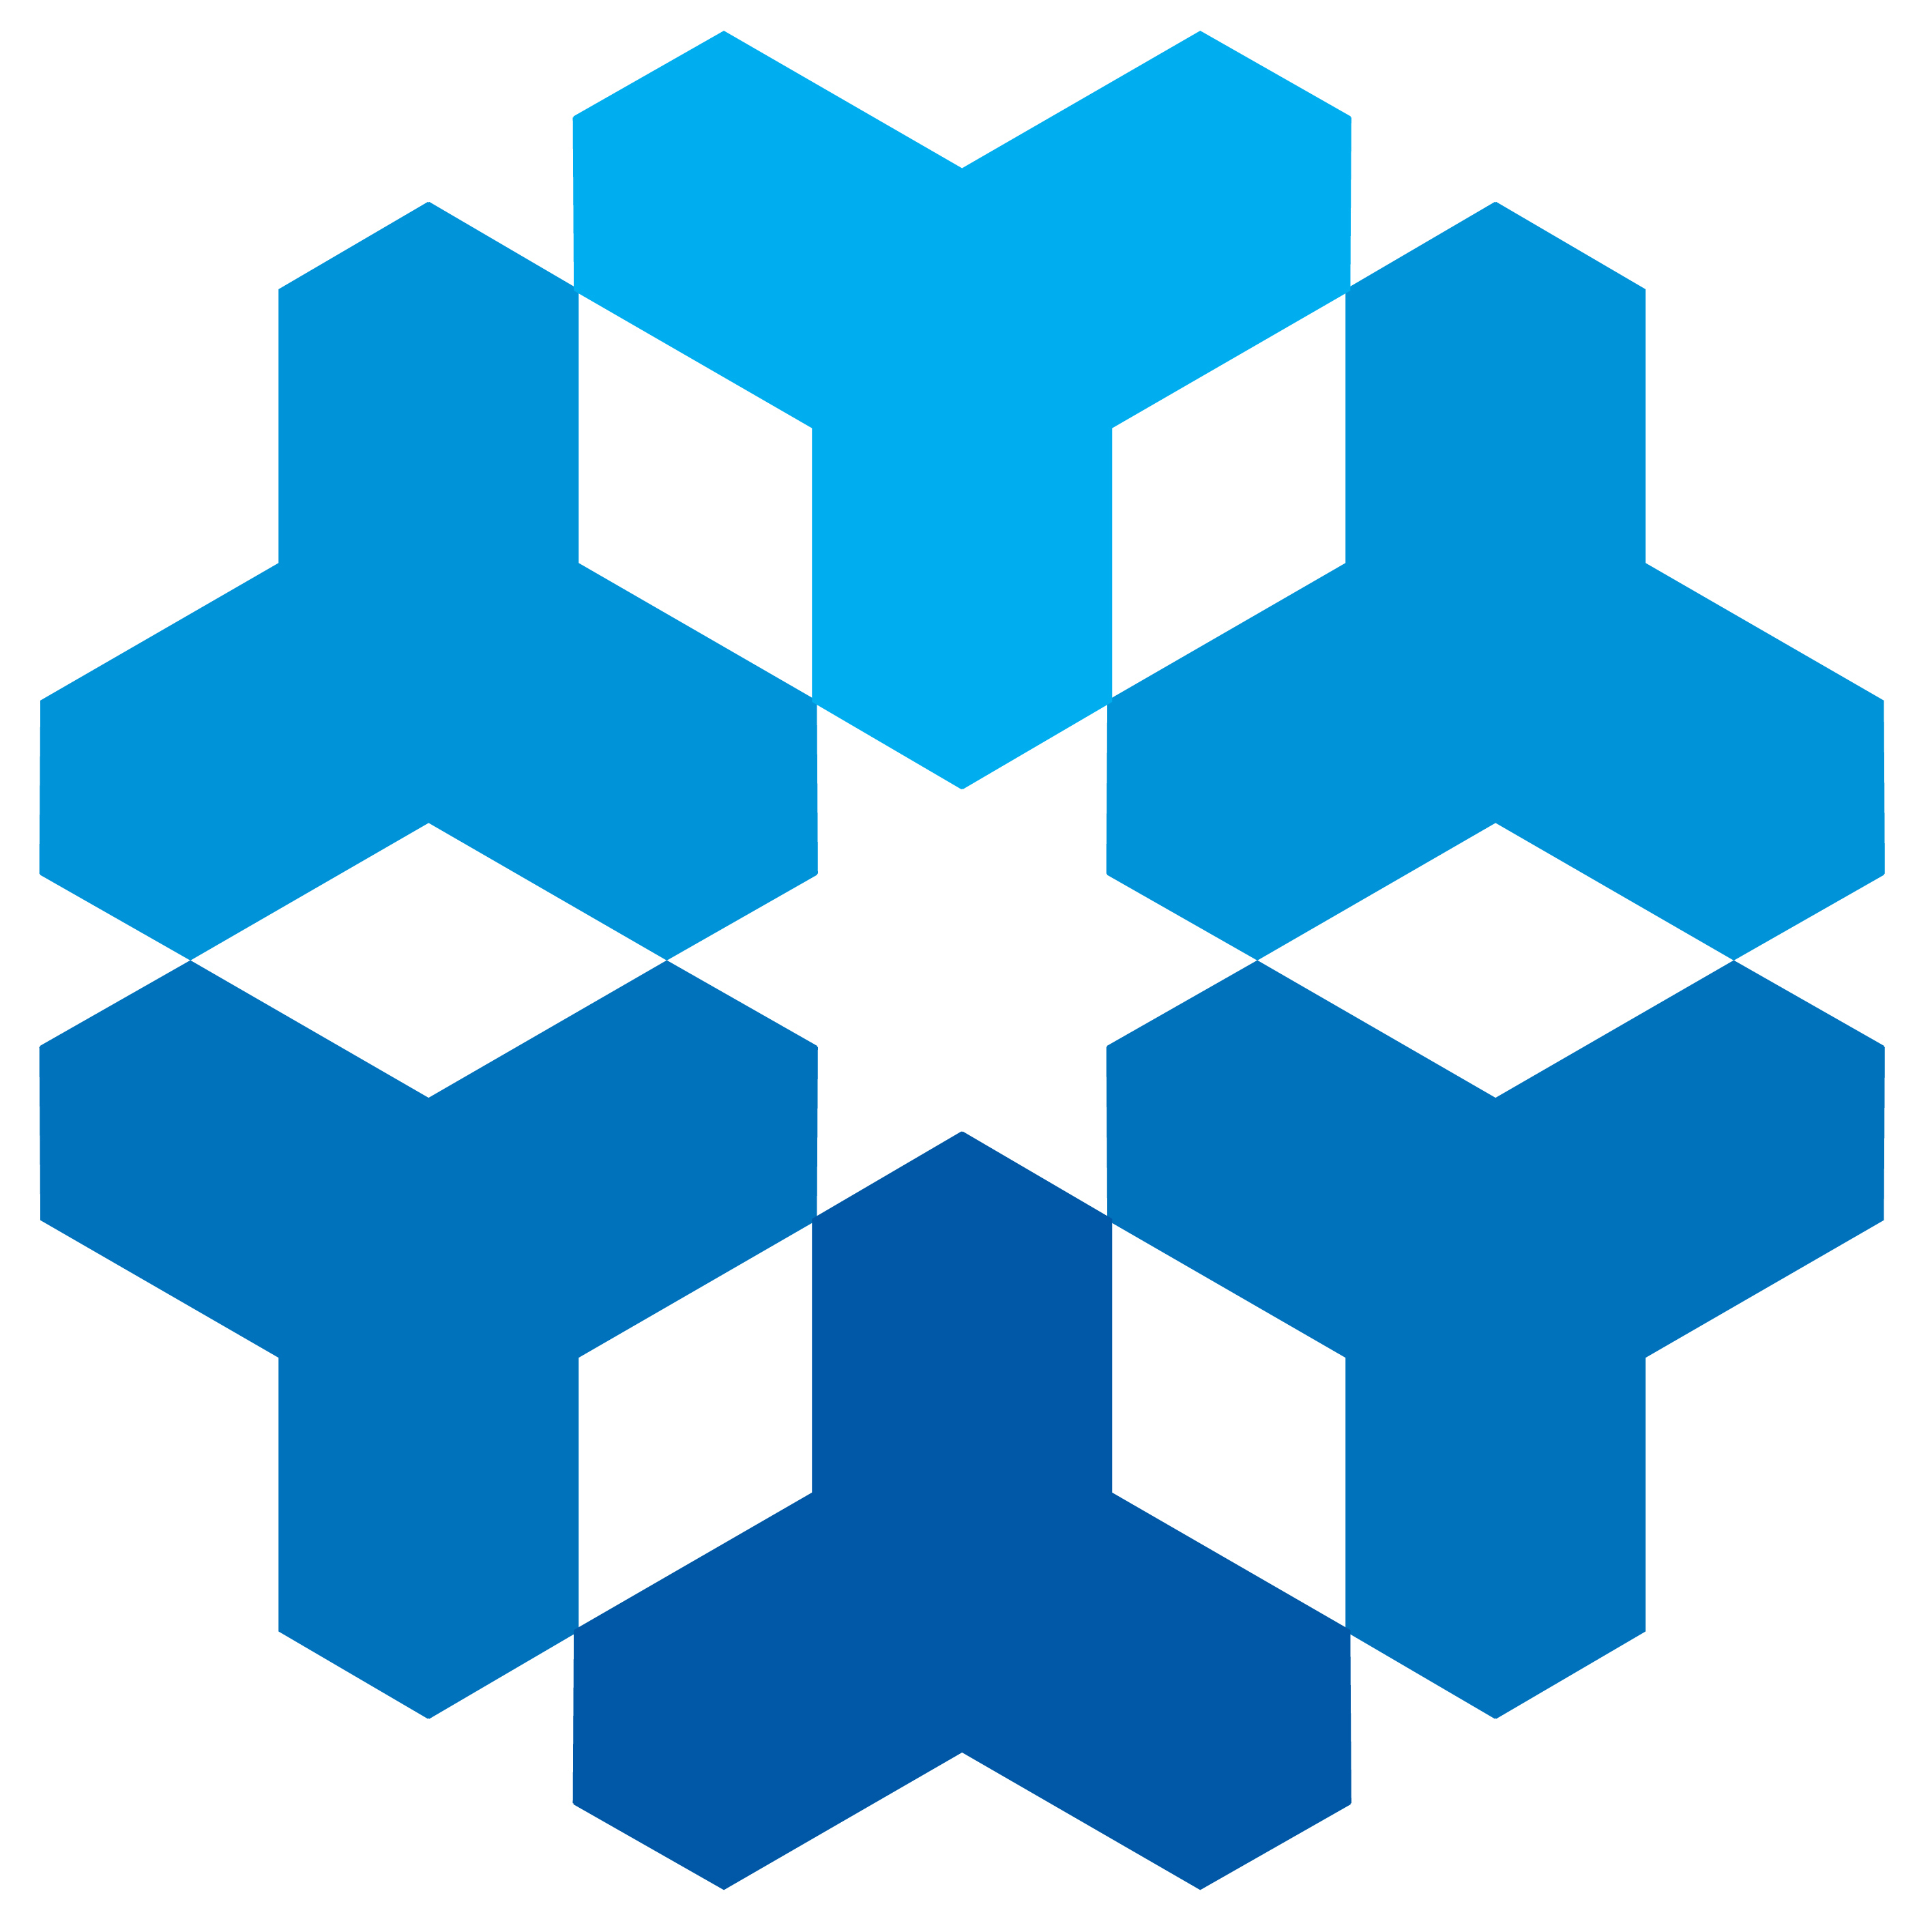 Logo de un copo de nieve en color azul sobre fondo blanco